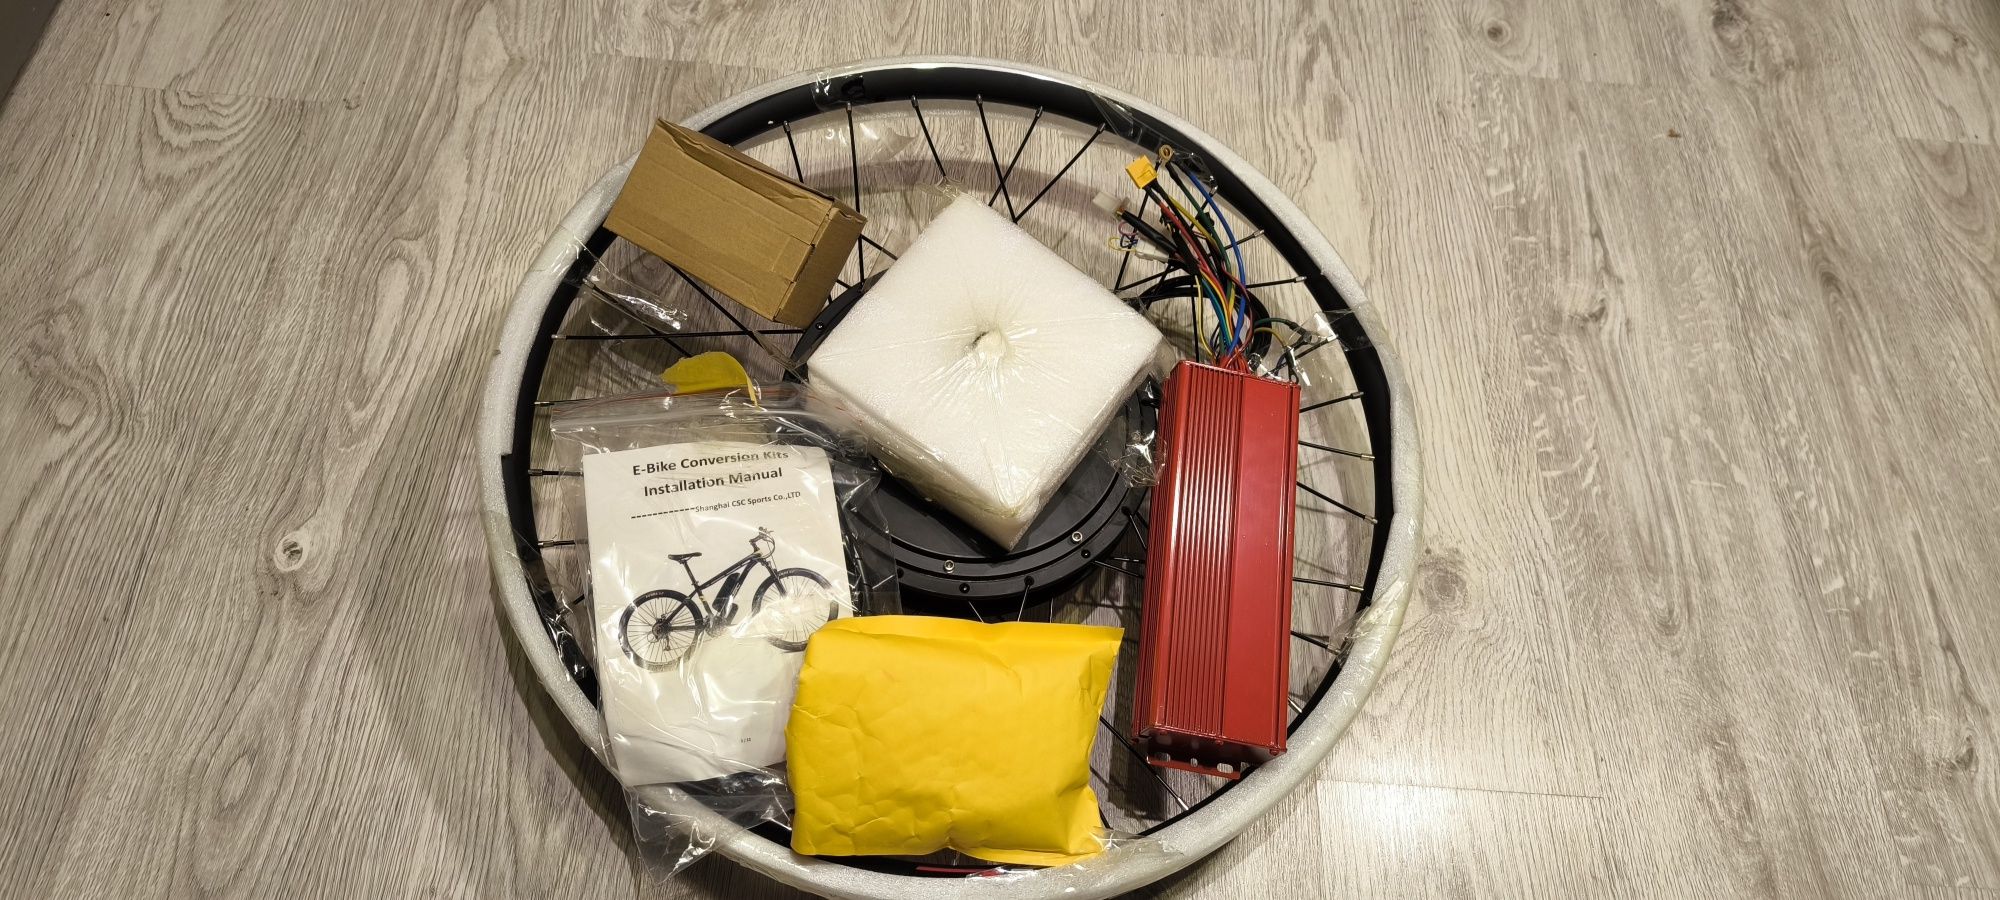 Kompletny zestaw do konwersji rower elektryczny.